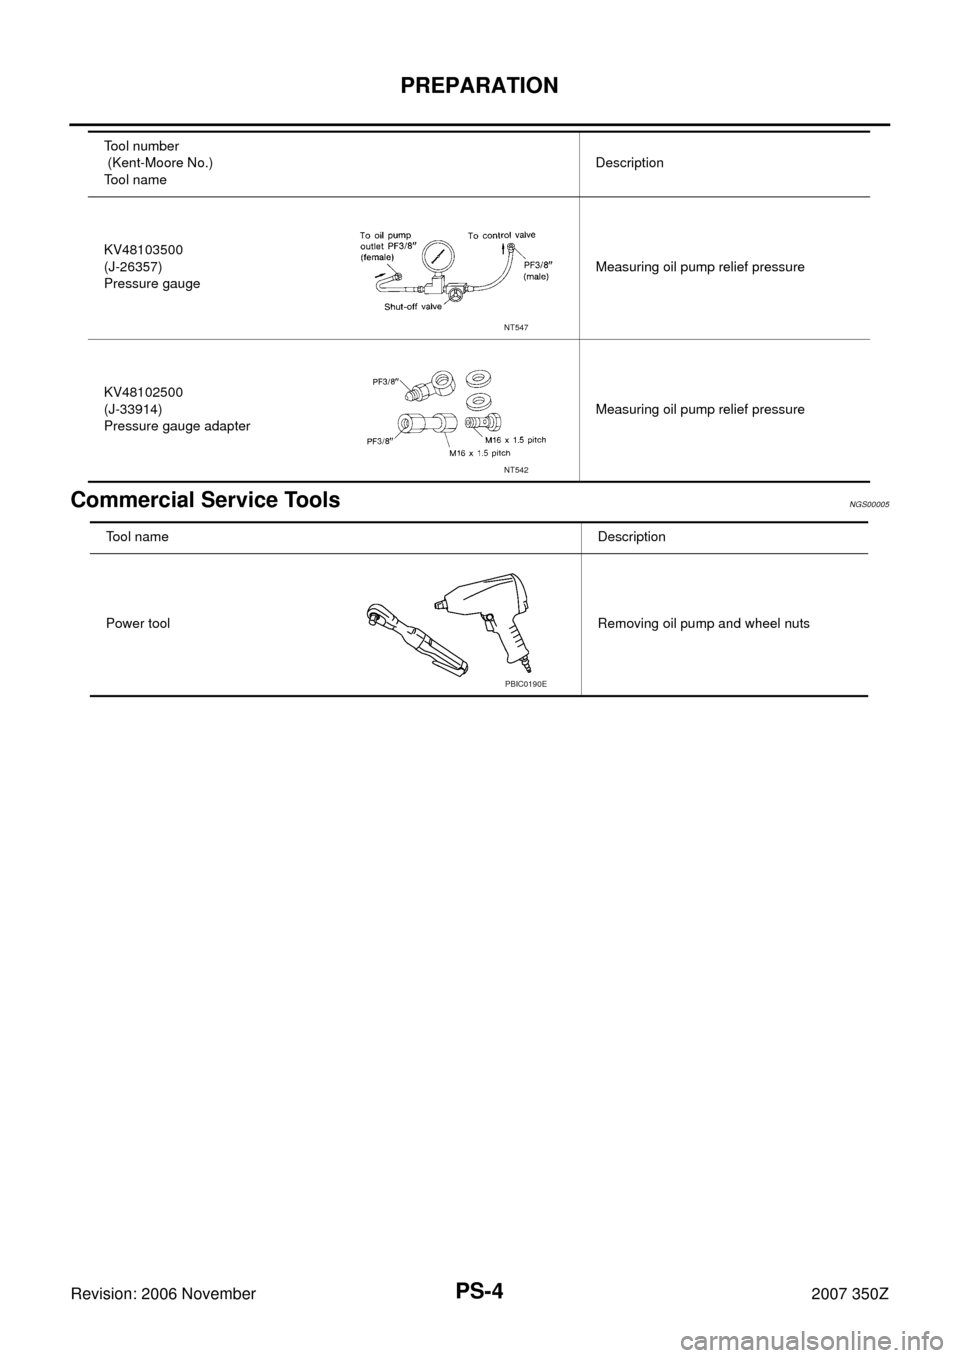 NISSAN 350Z 2007 Z33 Power Steering System Workshop Manual PS-4
PREPARATION
Revision: 2006 November2007 350Z
Commercial Service ToolsNGS00005
KV48103500
(J-26357)
Pressure gaugeMeasuring oil pump relief pressure
KV48102500
(J-33914)
Pressure gauge adapterMeas